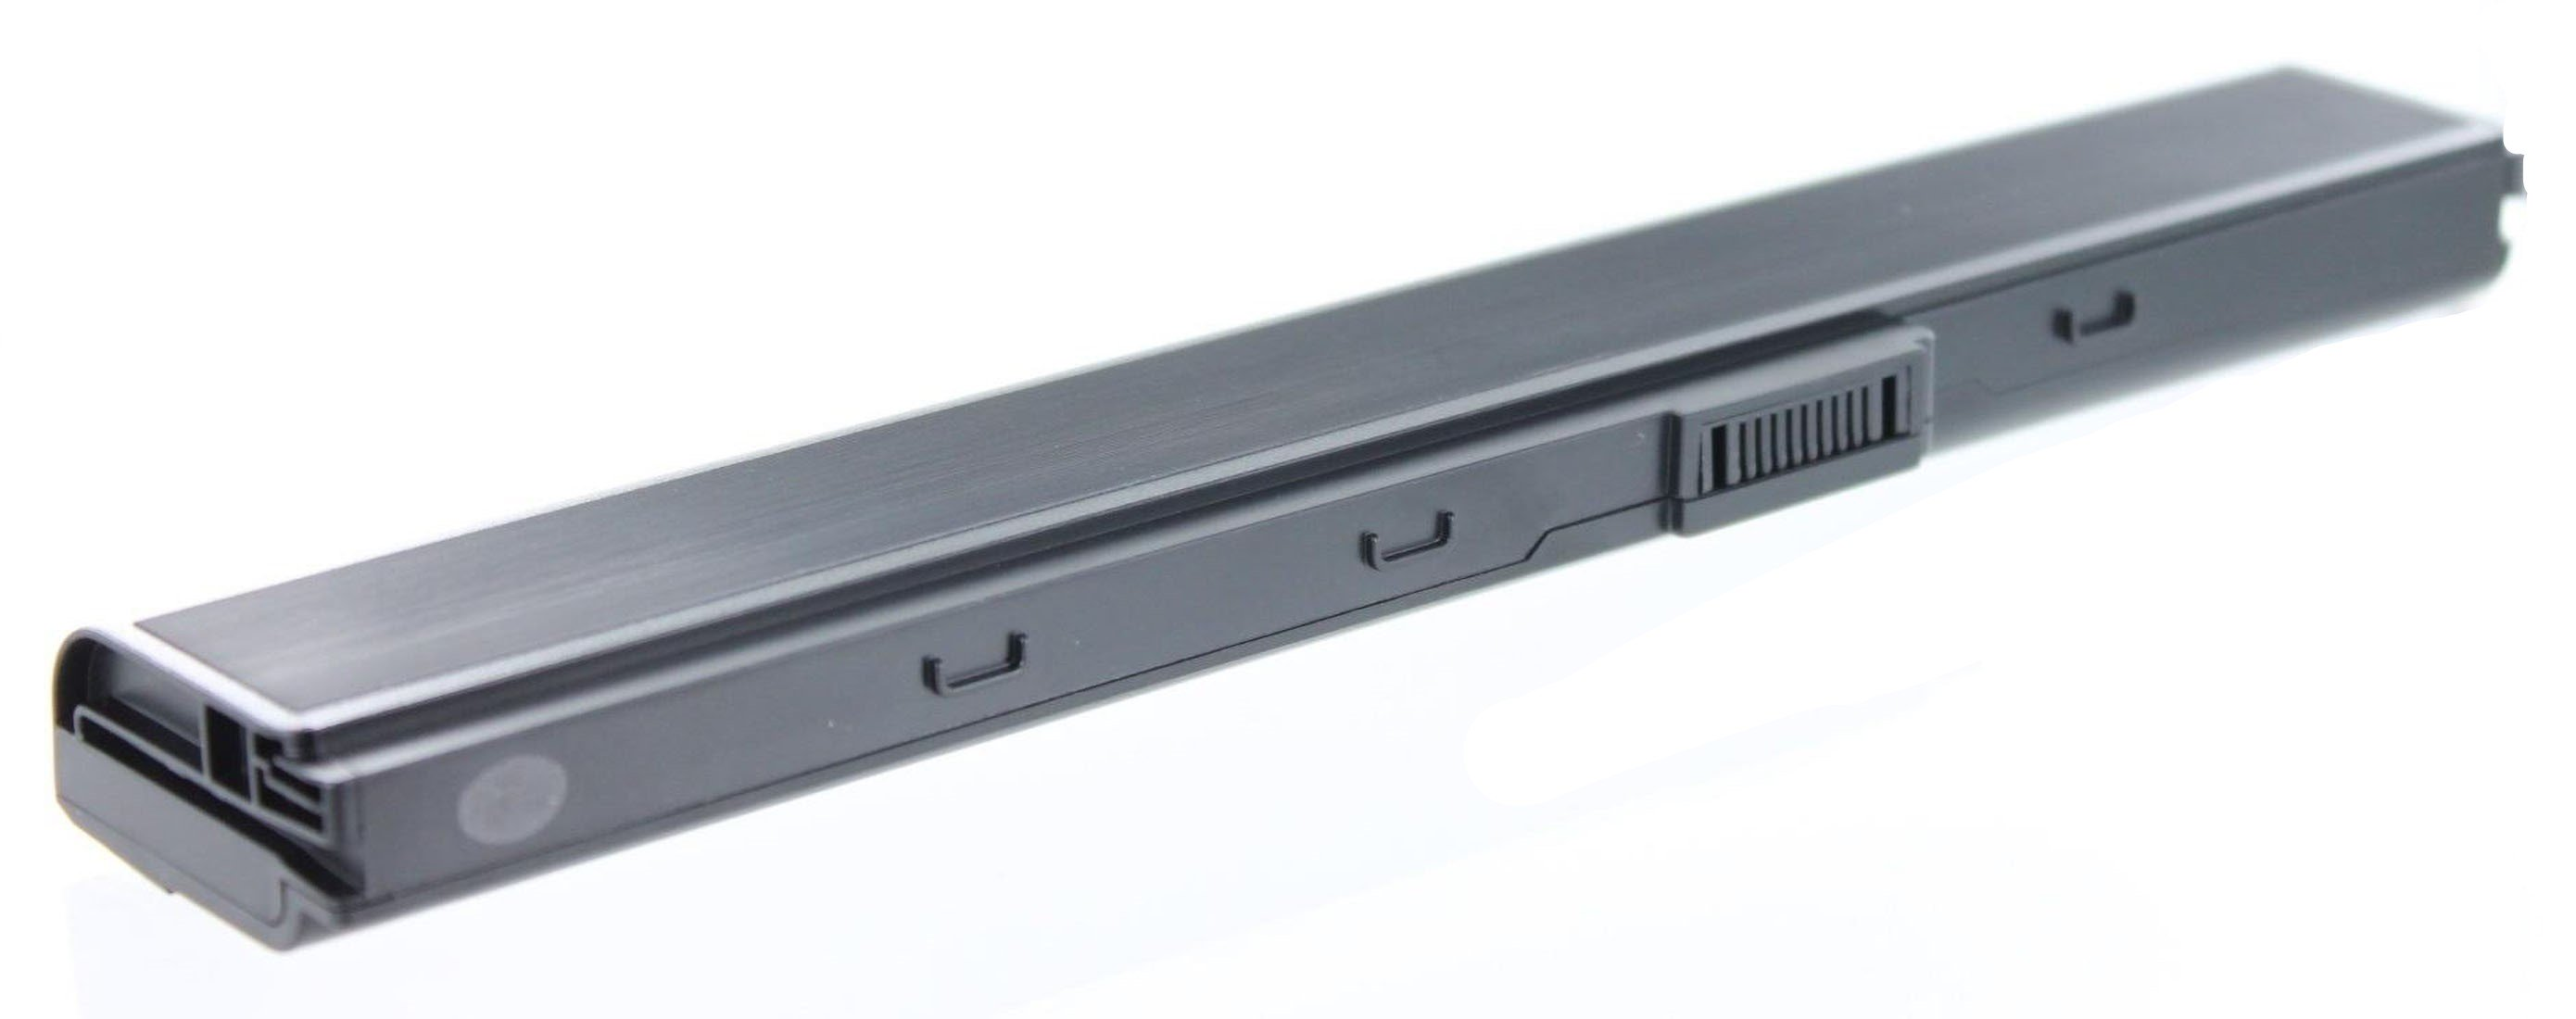 AGI Akku kompatibel mit Asus 10.8 4400 Notebookakku, mAh Volt, Li-Ion, X52JB-SX015V Li-Ion